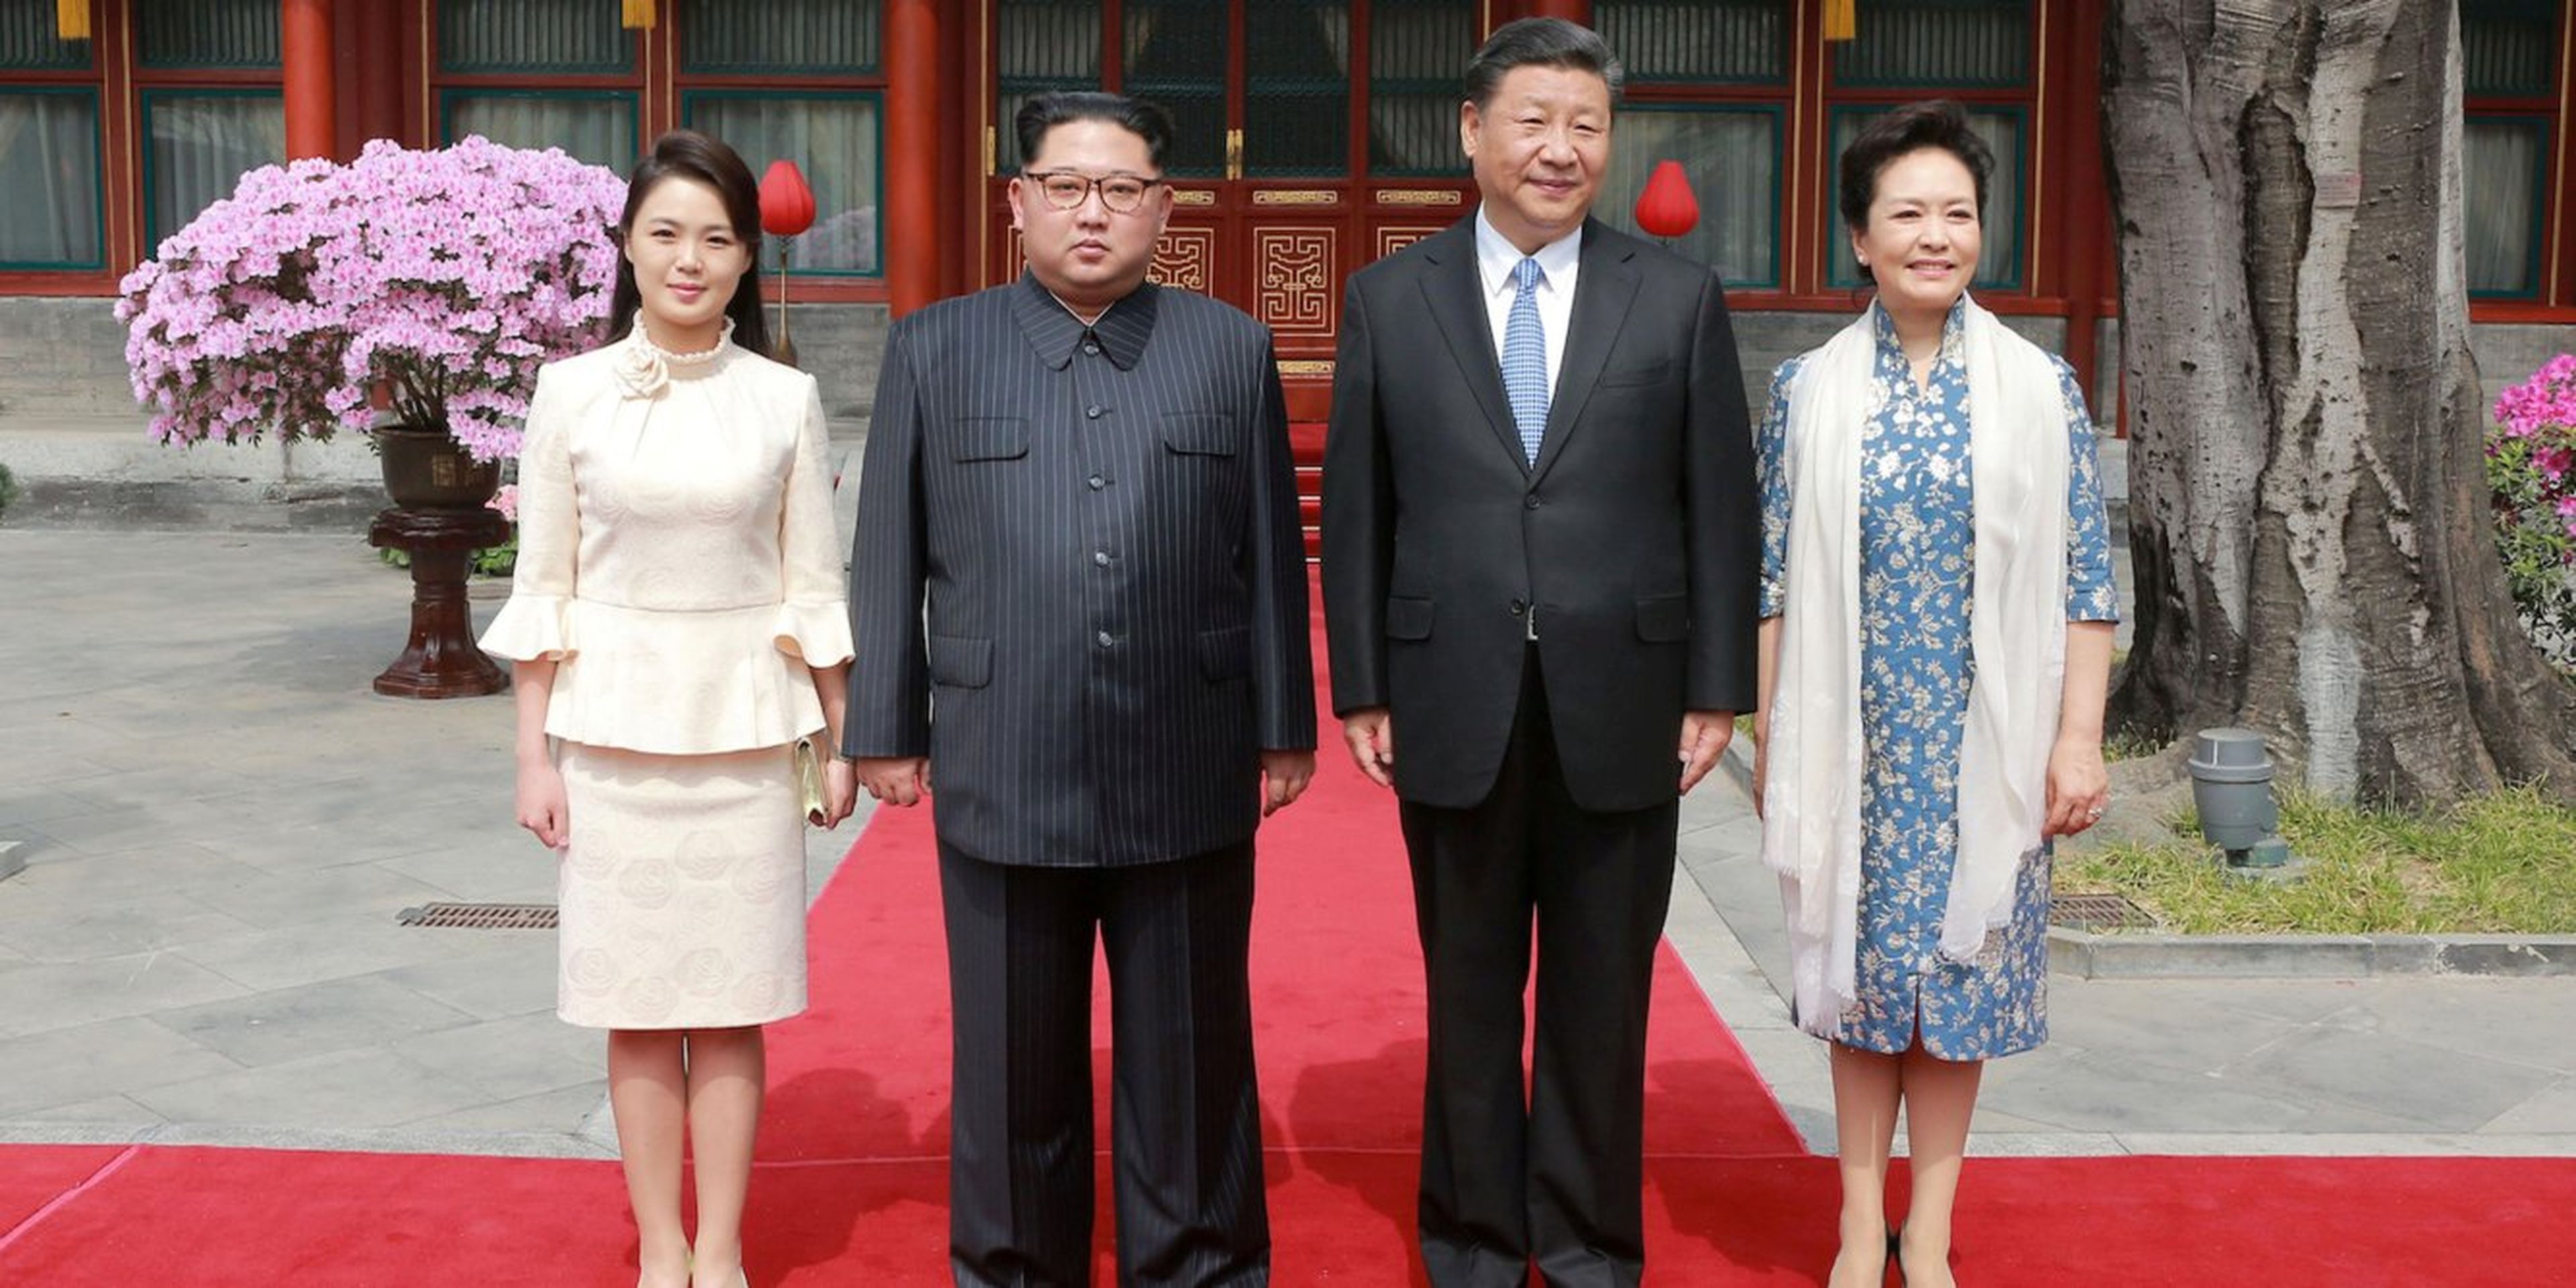 El líder de Corea del Norte, Kim Jong Un, y su mujer, Ri Sol Ju, posan con el presidente chino, Xi Jinping, y su mujer, Peng Liyuan, en Pekín, China.